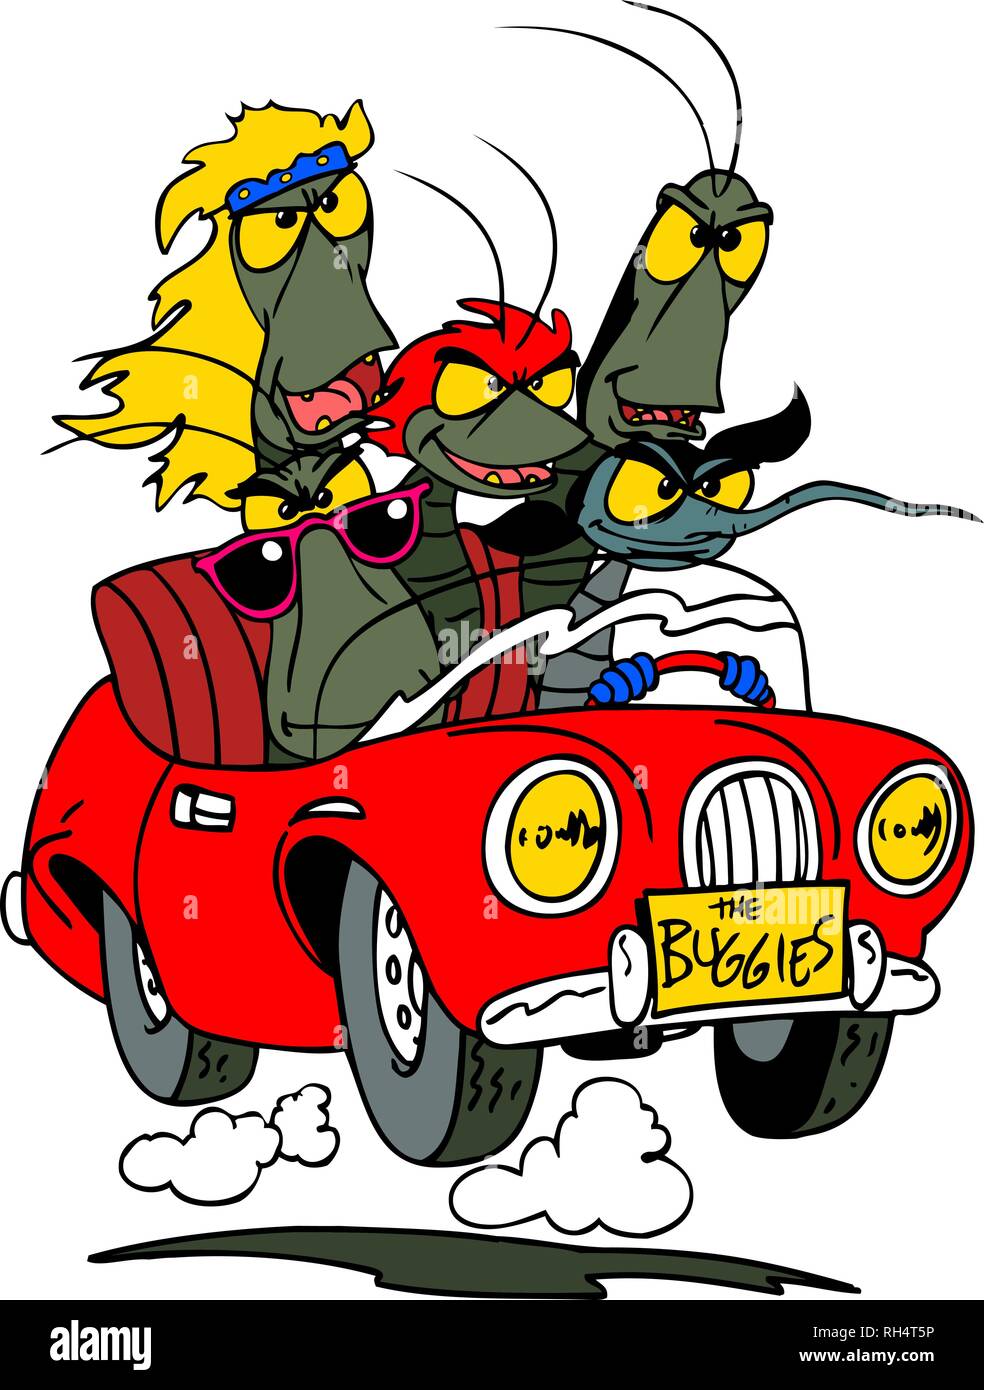 Un cartoon music band appelé Buggies vector illustration Illustration de Vecteur